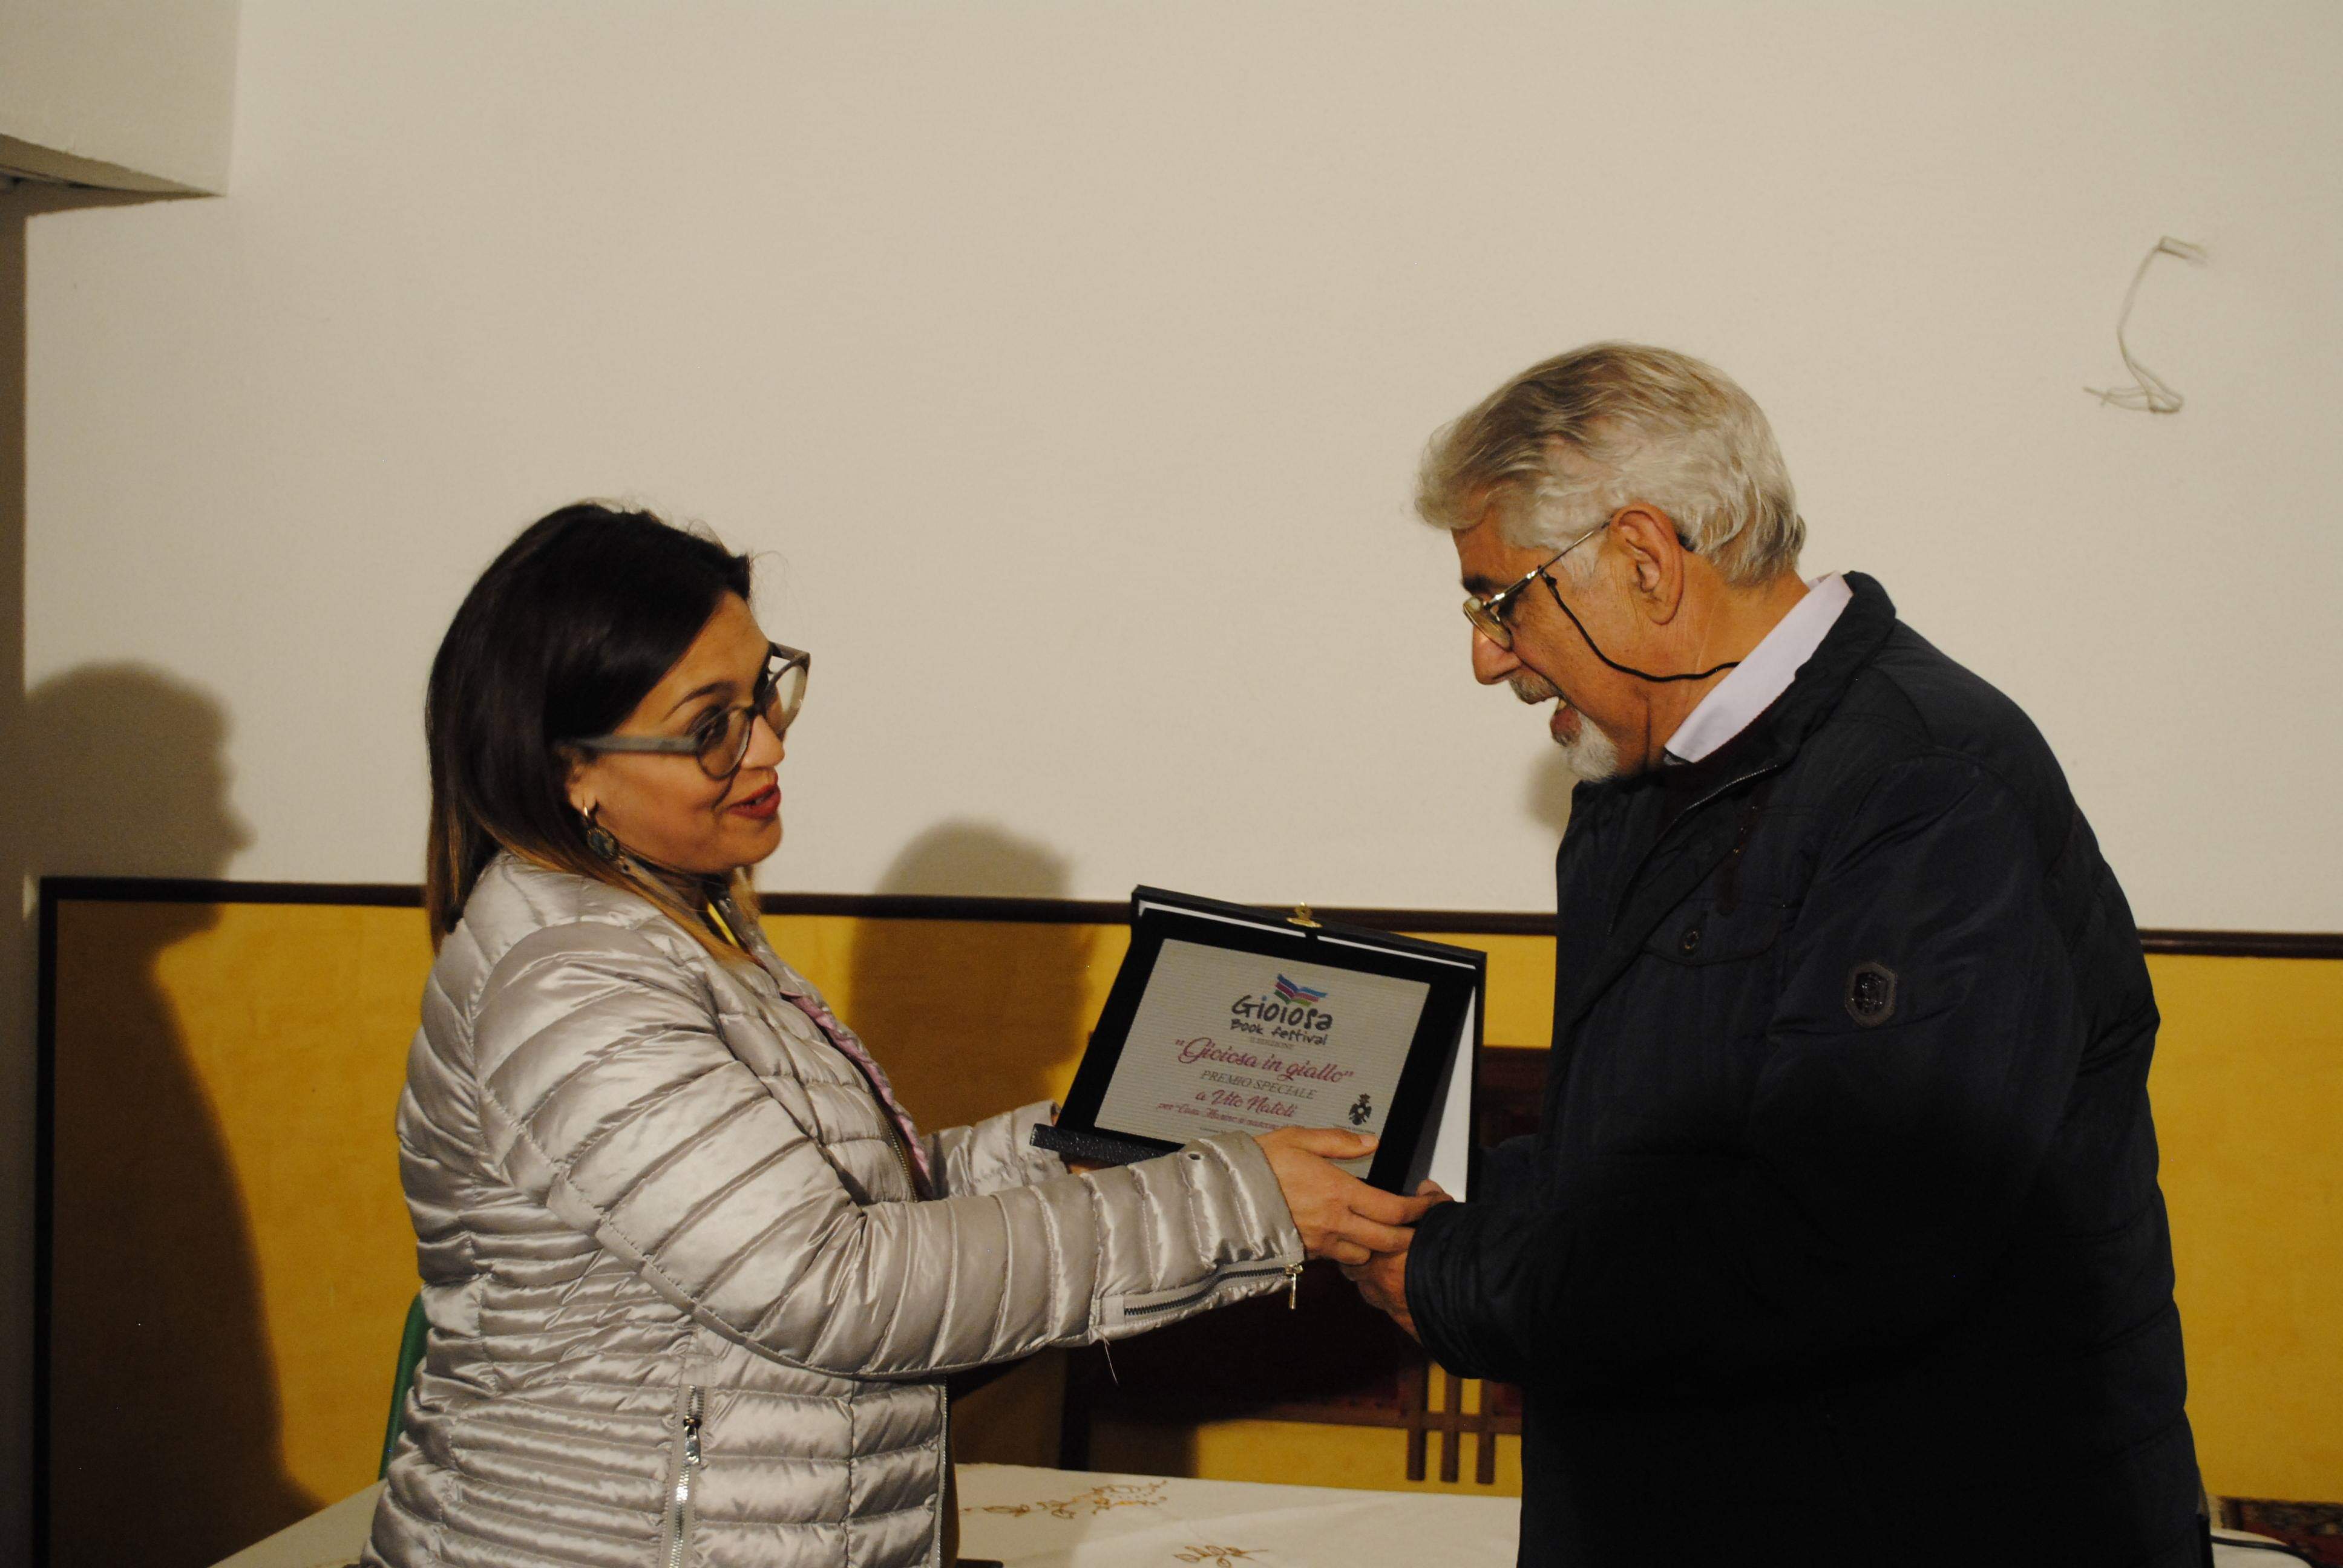 Vito Natoli vince il Premio Speciale “Gioiosa in Giallo”